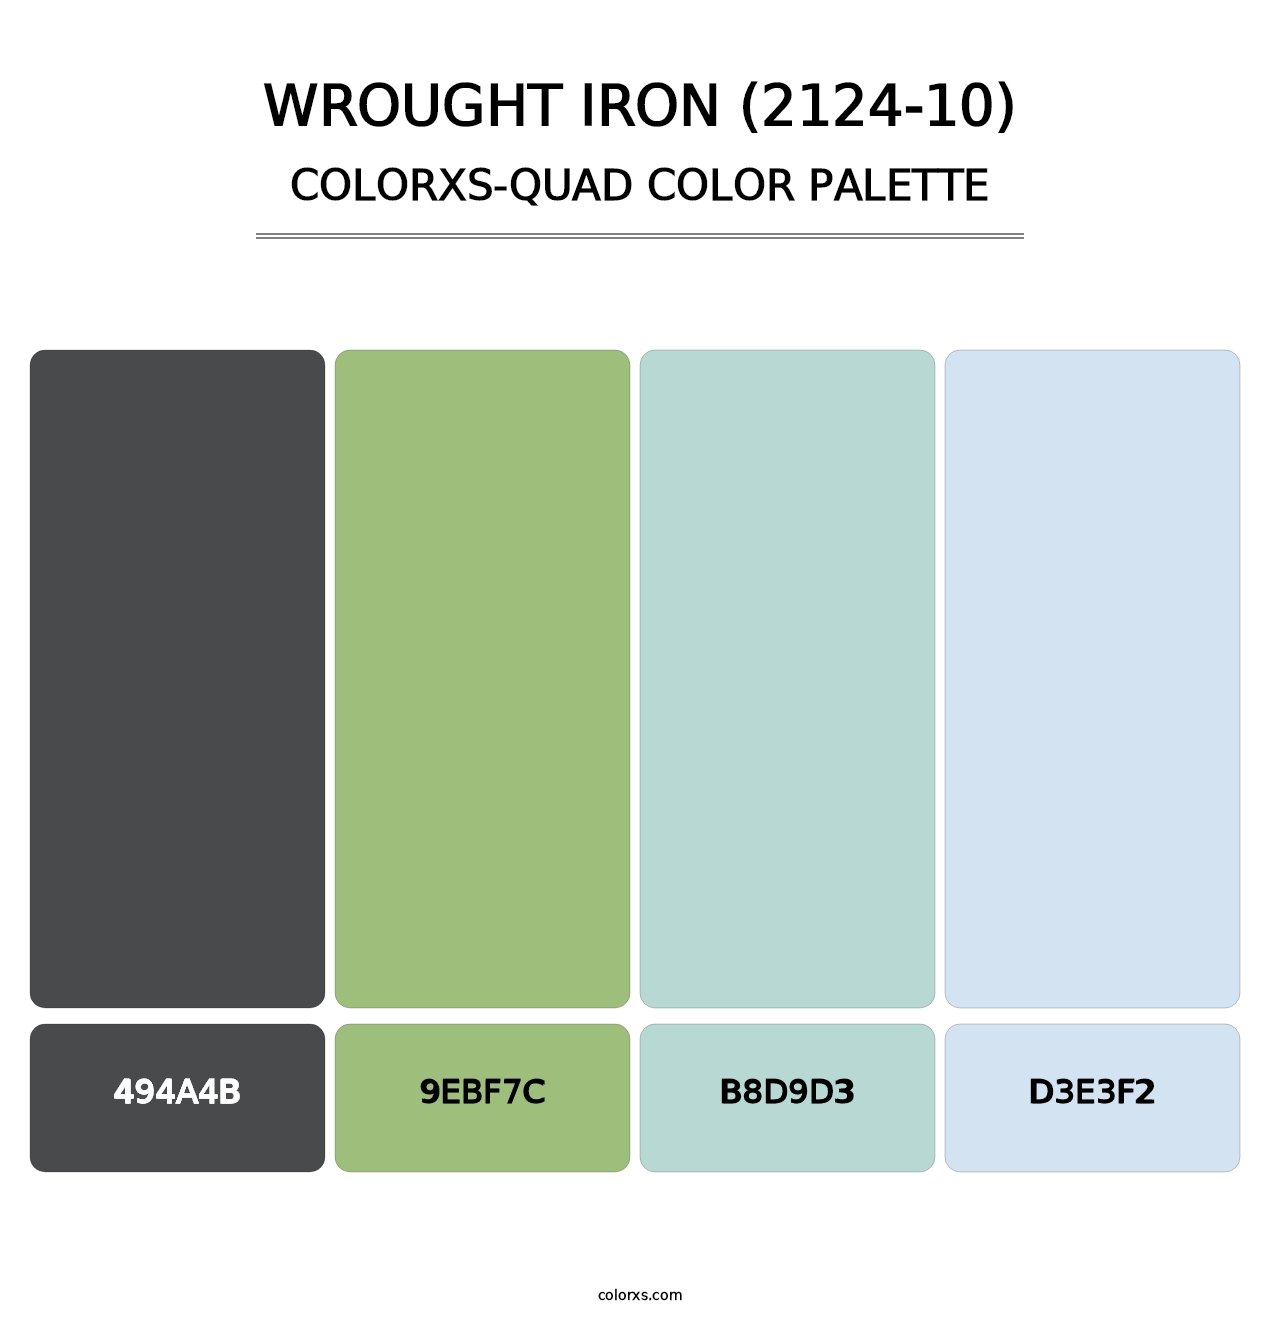 Wrought Iron (2124-10) - Colorxs Quad Palette